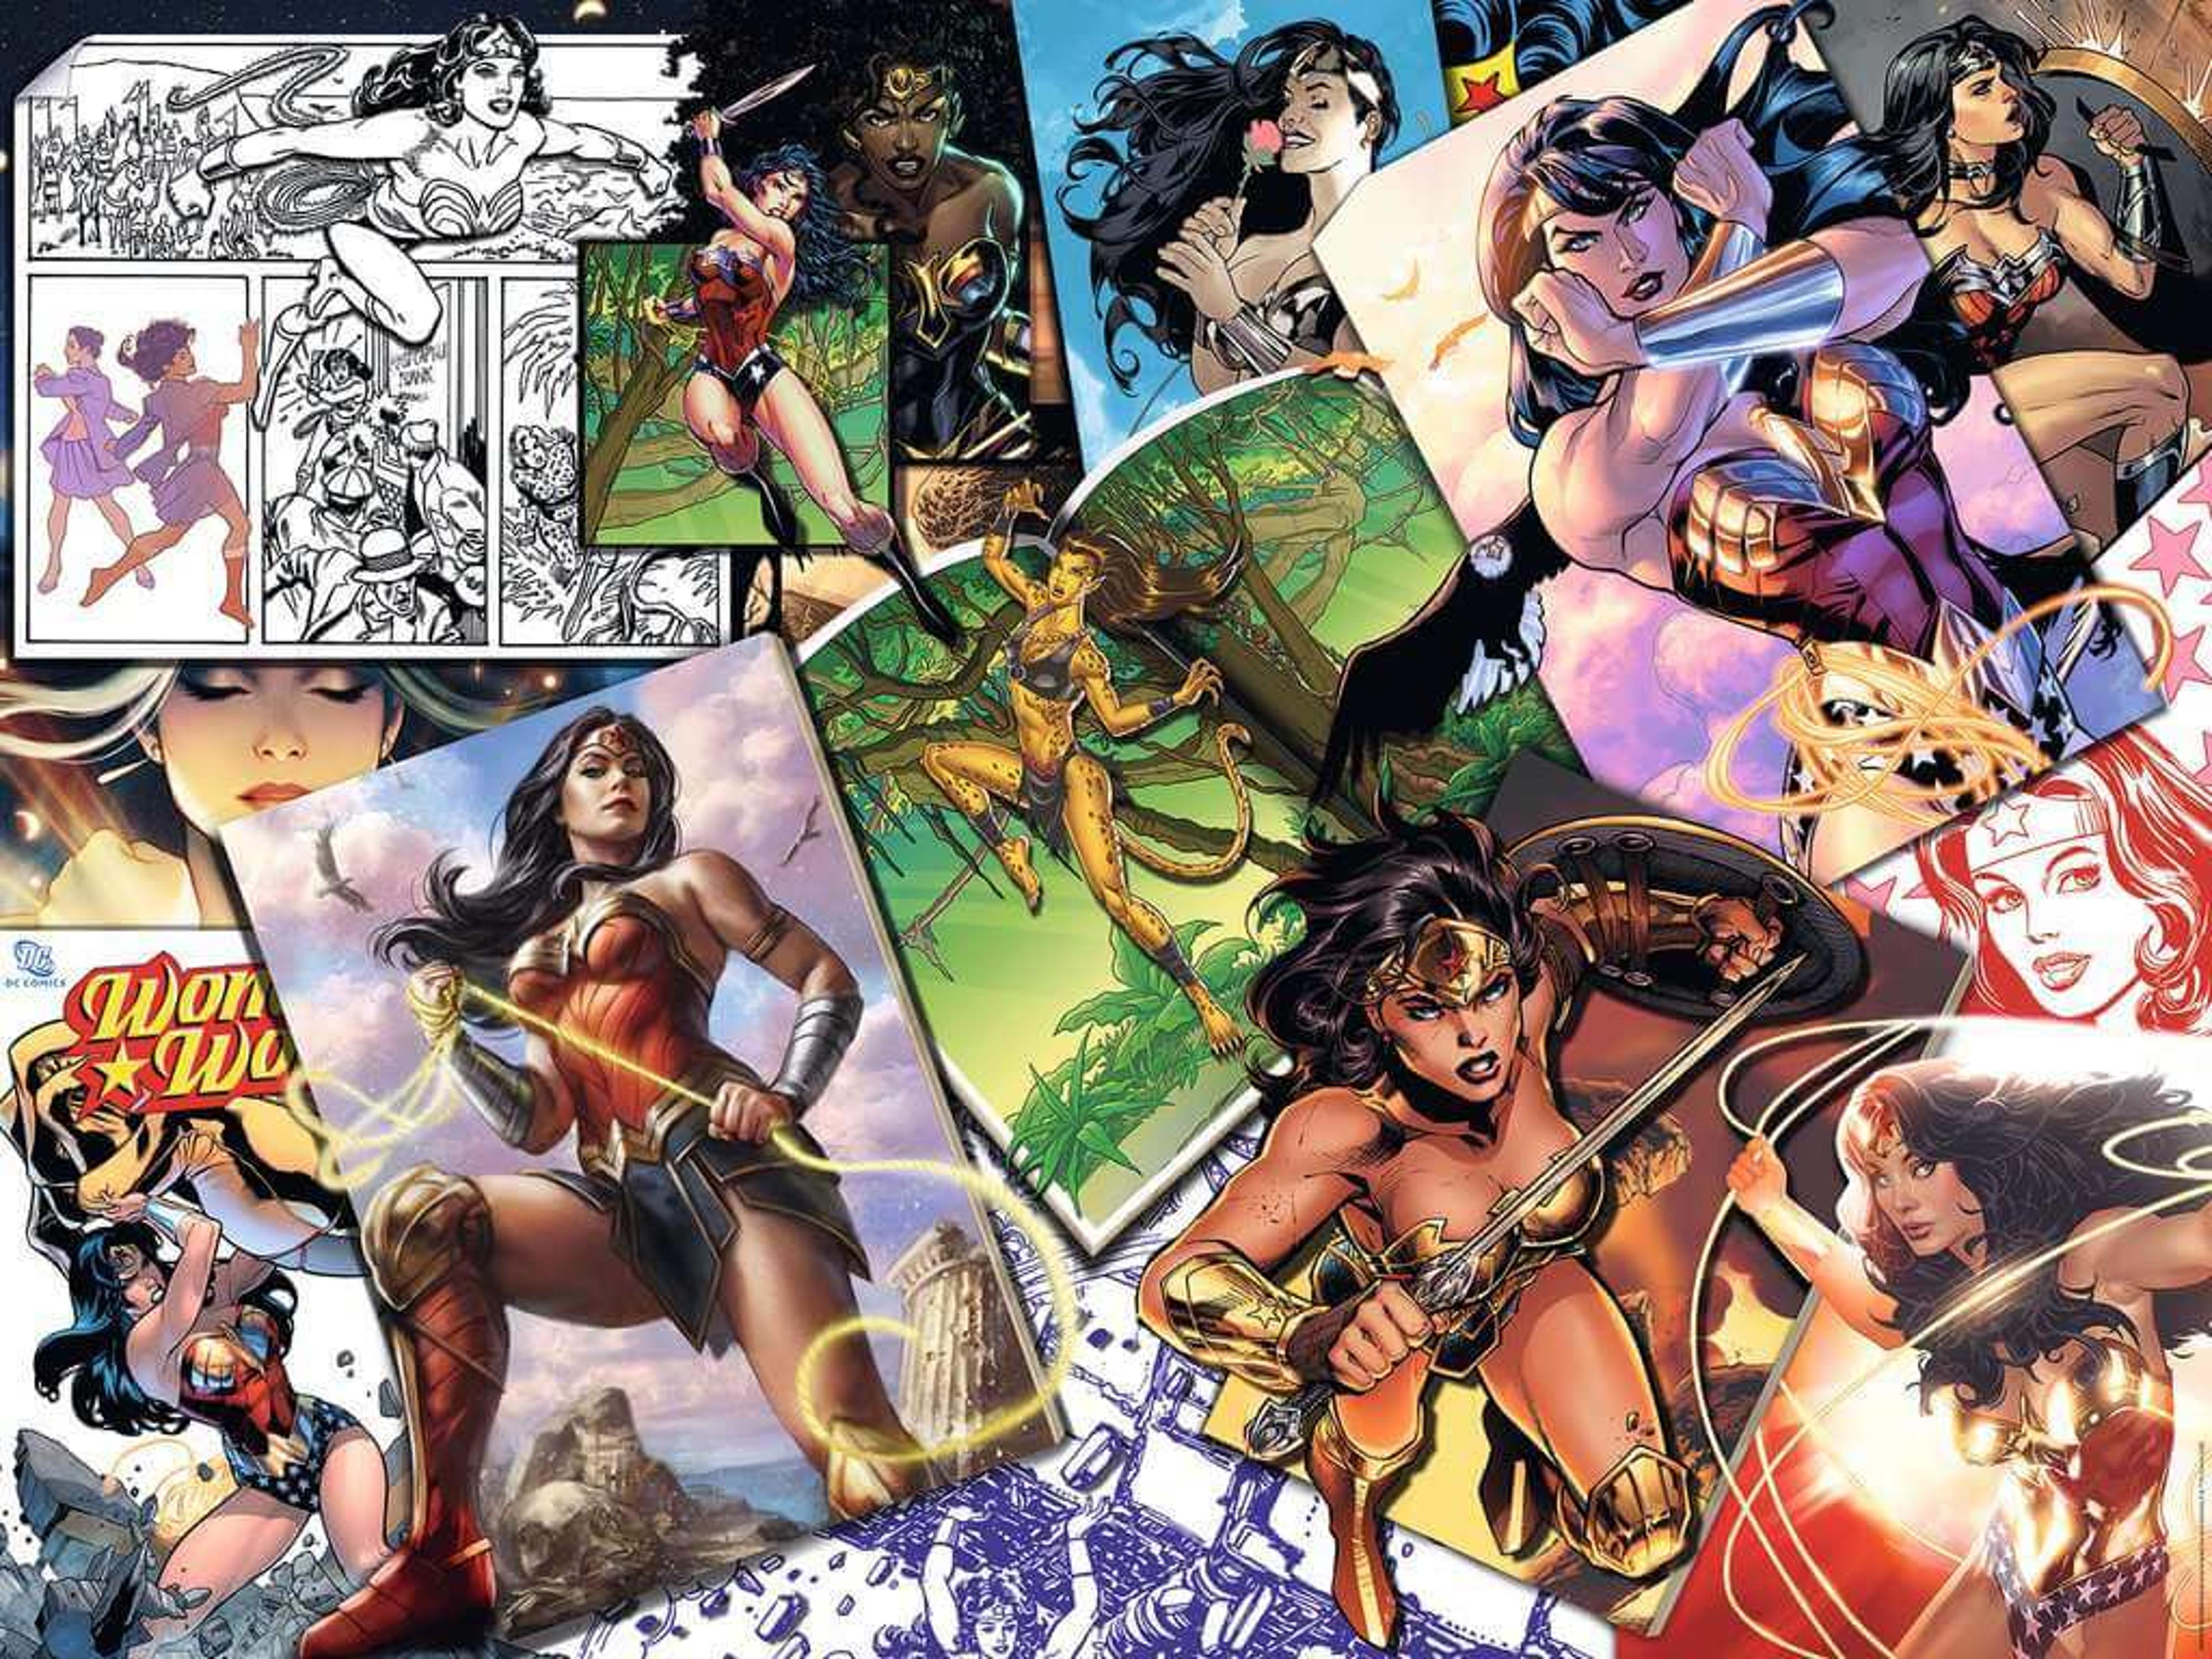 Ravensburger Wonder Woman 1500pc Puzzle